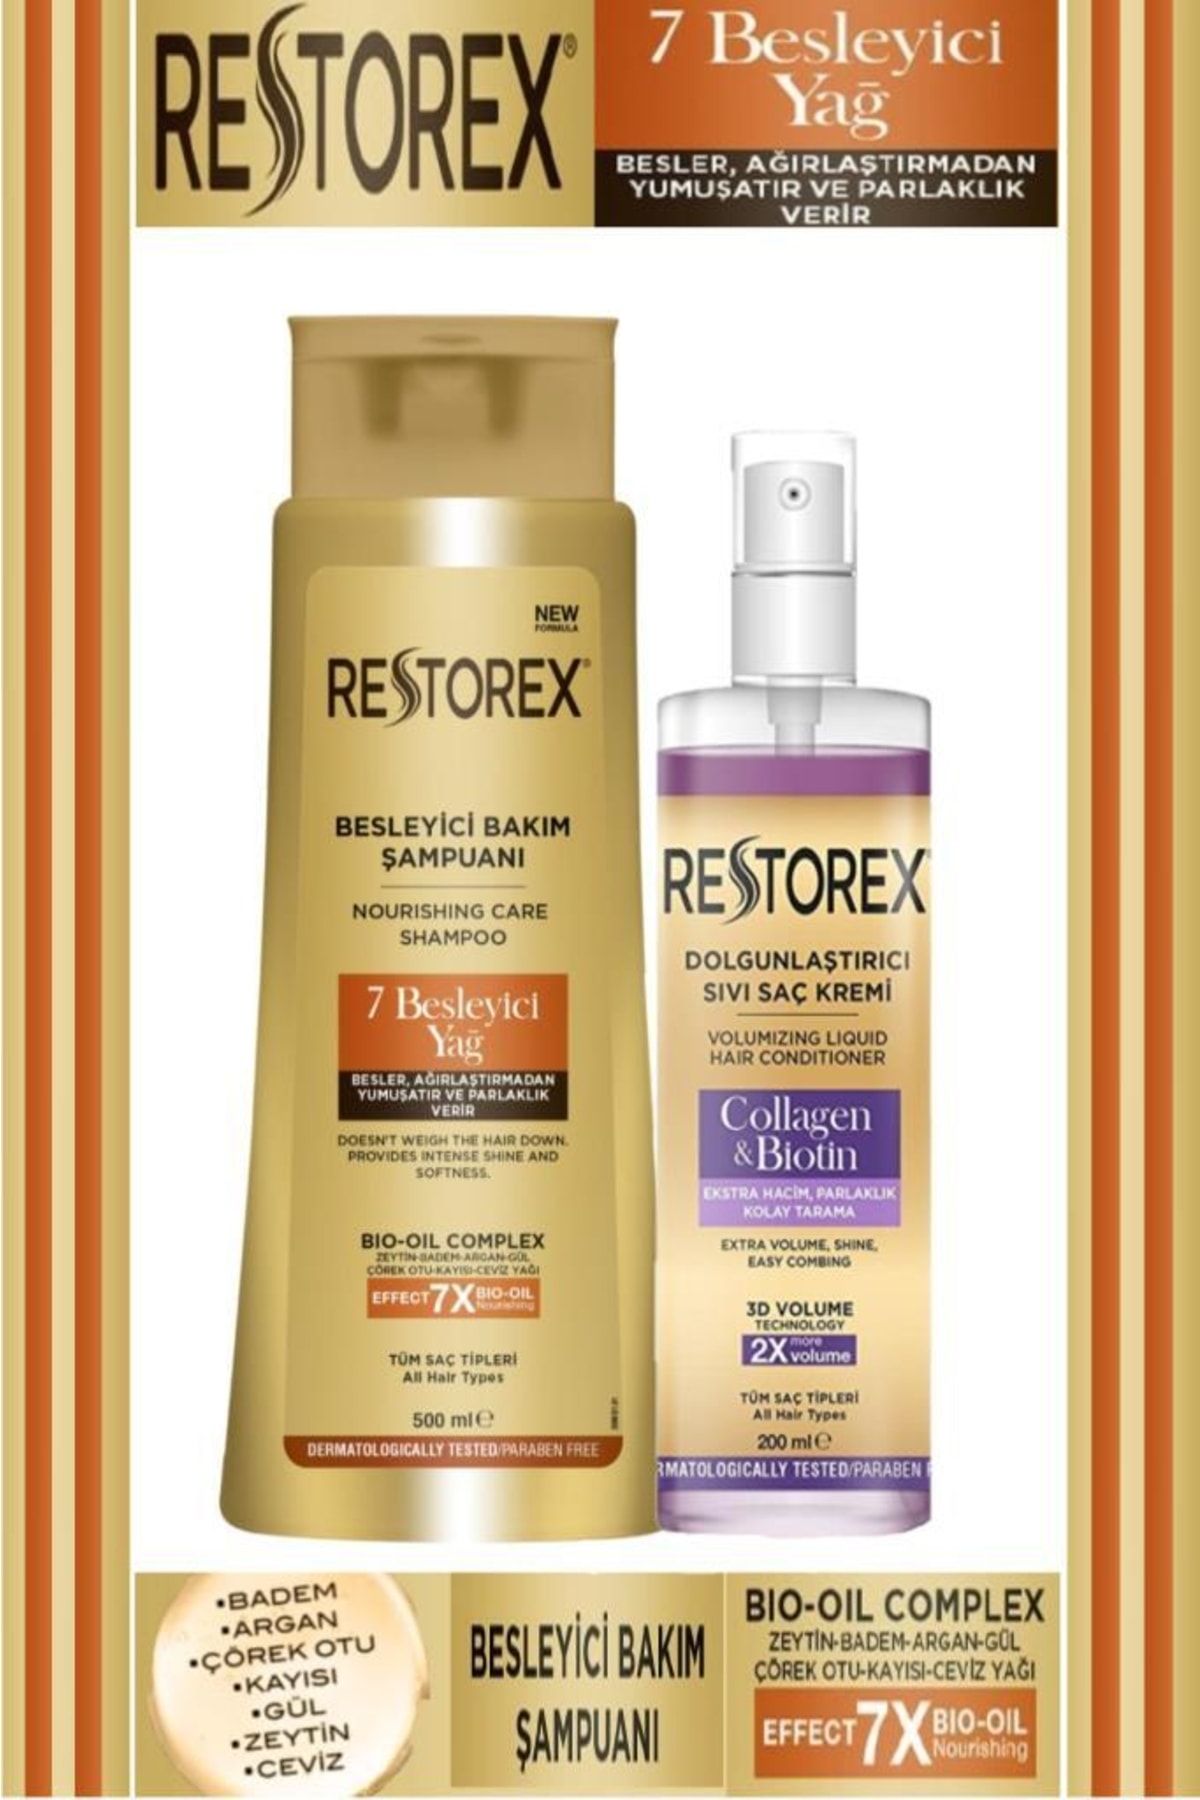 Restorex 7 Besleyici Yağ Şampuan 500 Ml + Dolğunlaştırıcı Sıvı Saç Kremi 200 Ml